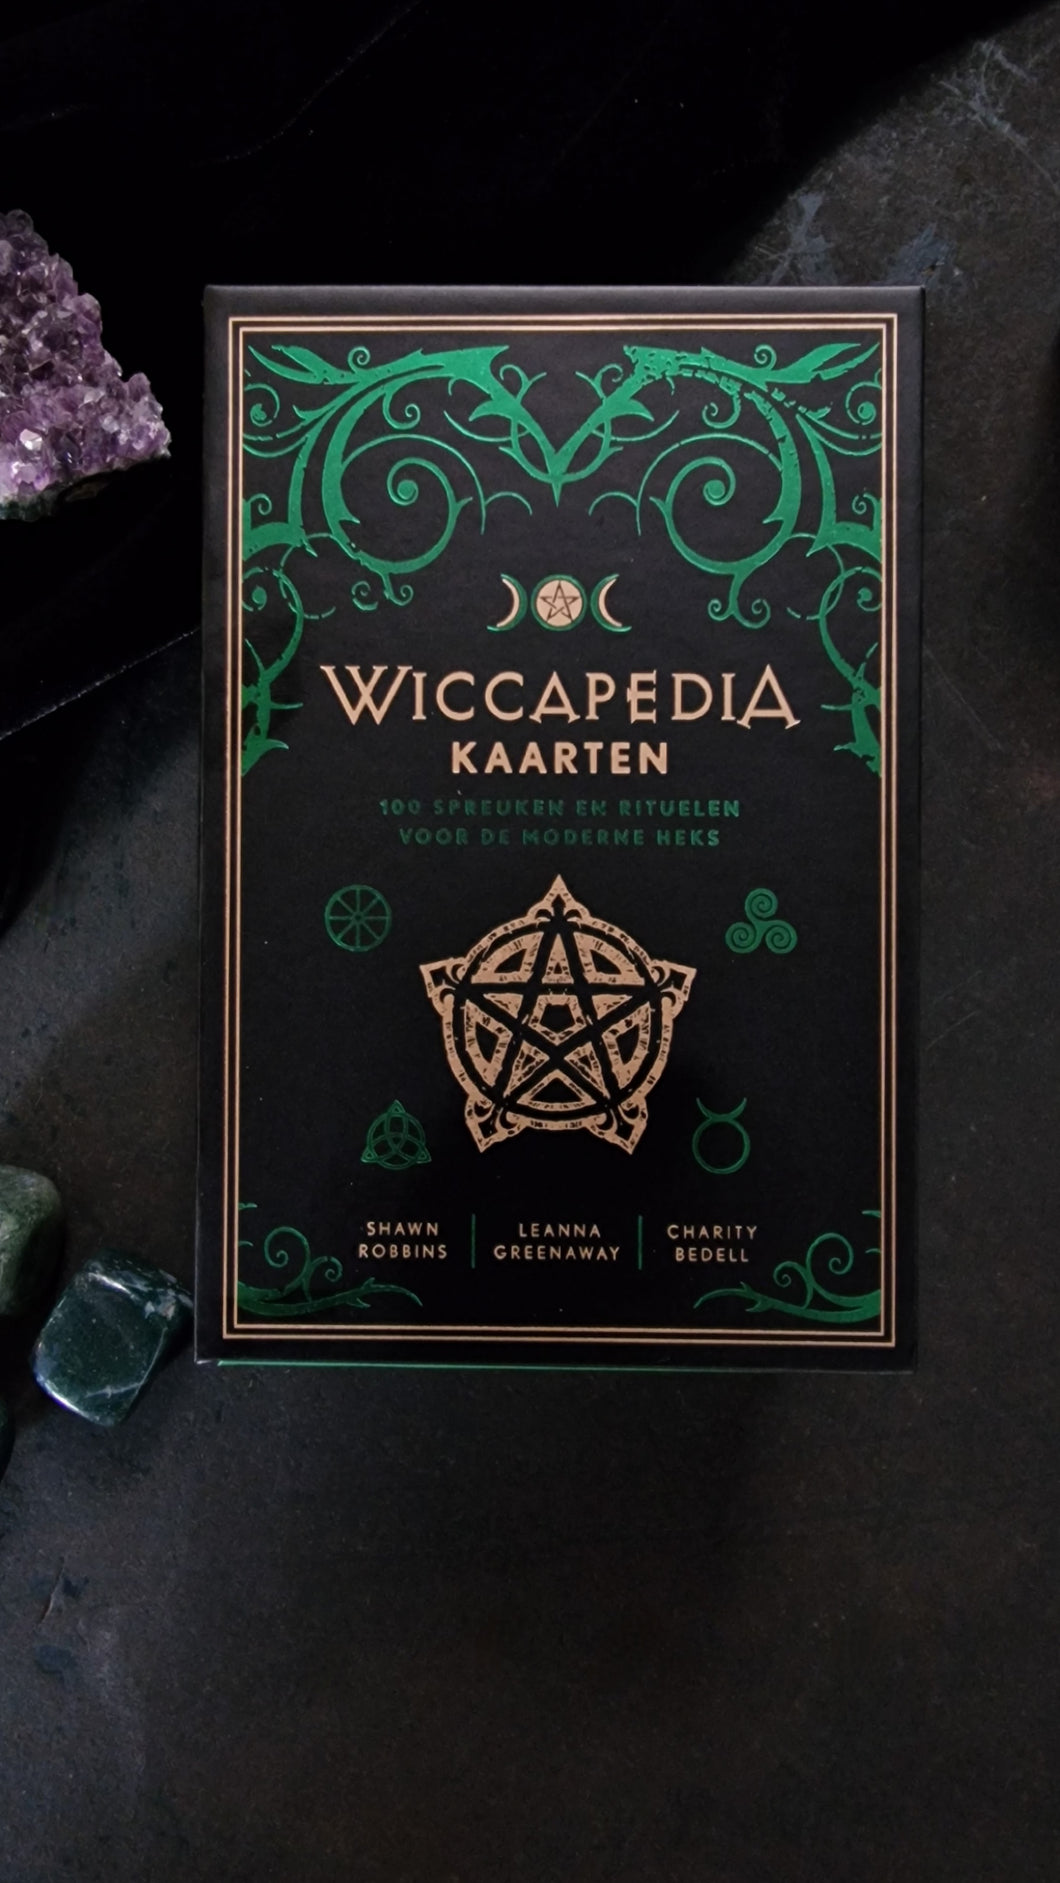 Wiccapedia kaarten tarot heksen